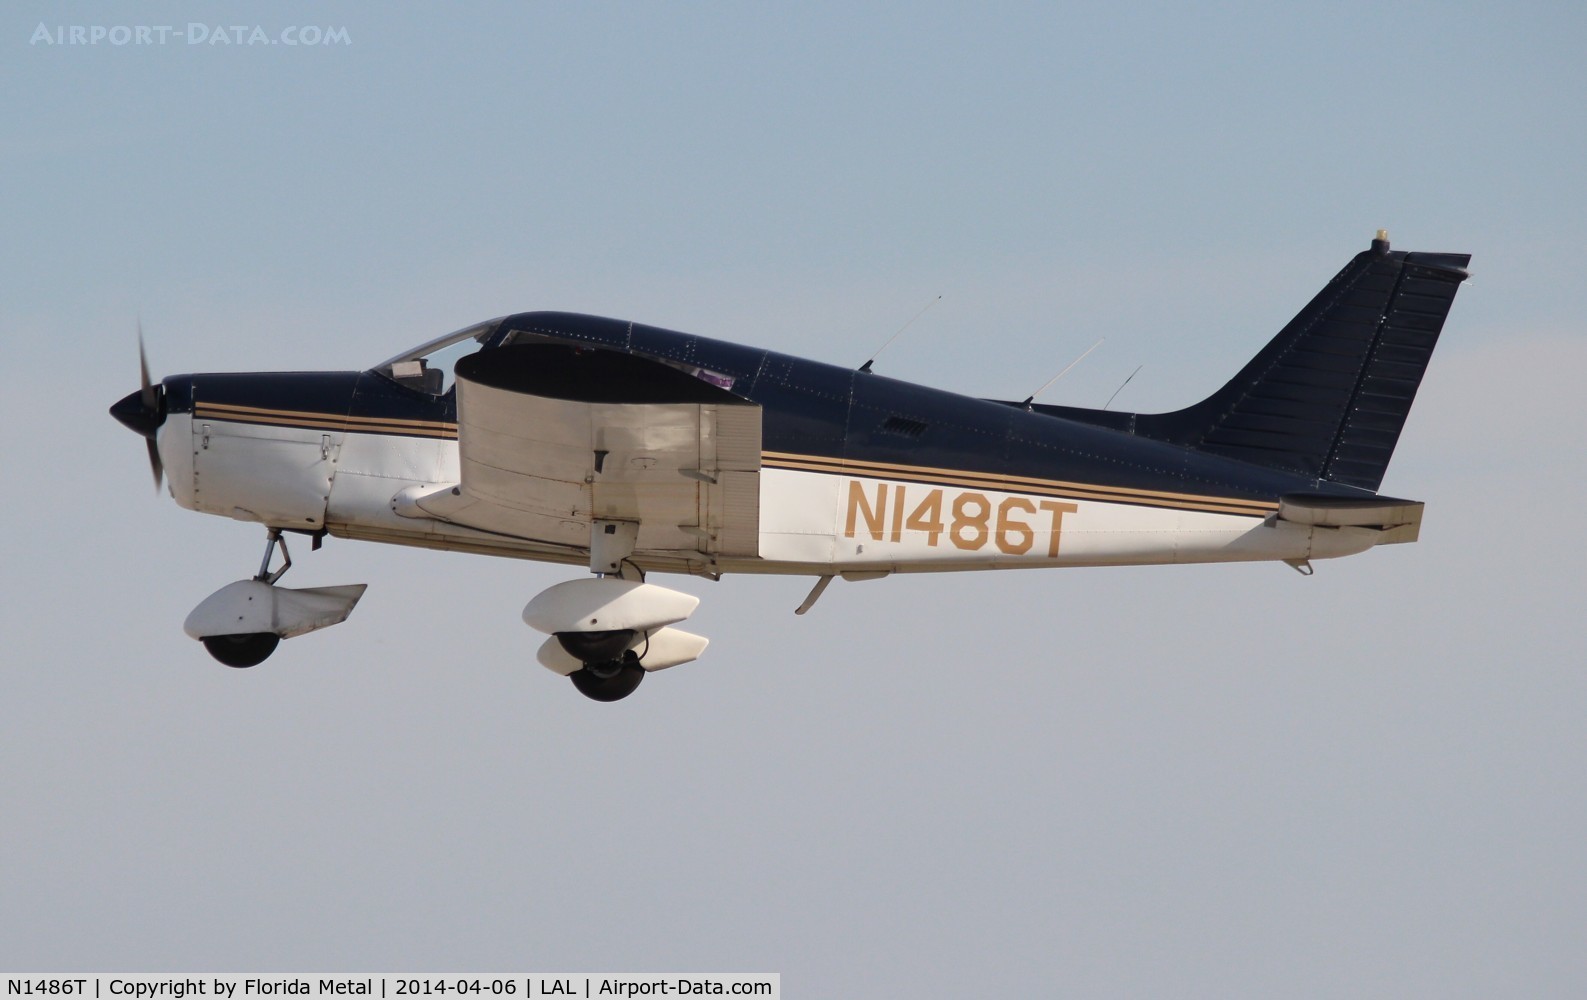 N1486T, 1972 Piper PA-28-140 C/N 28-7225533, PA-28-140